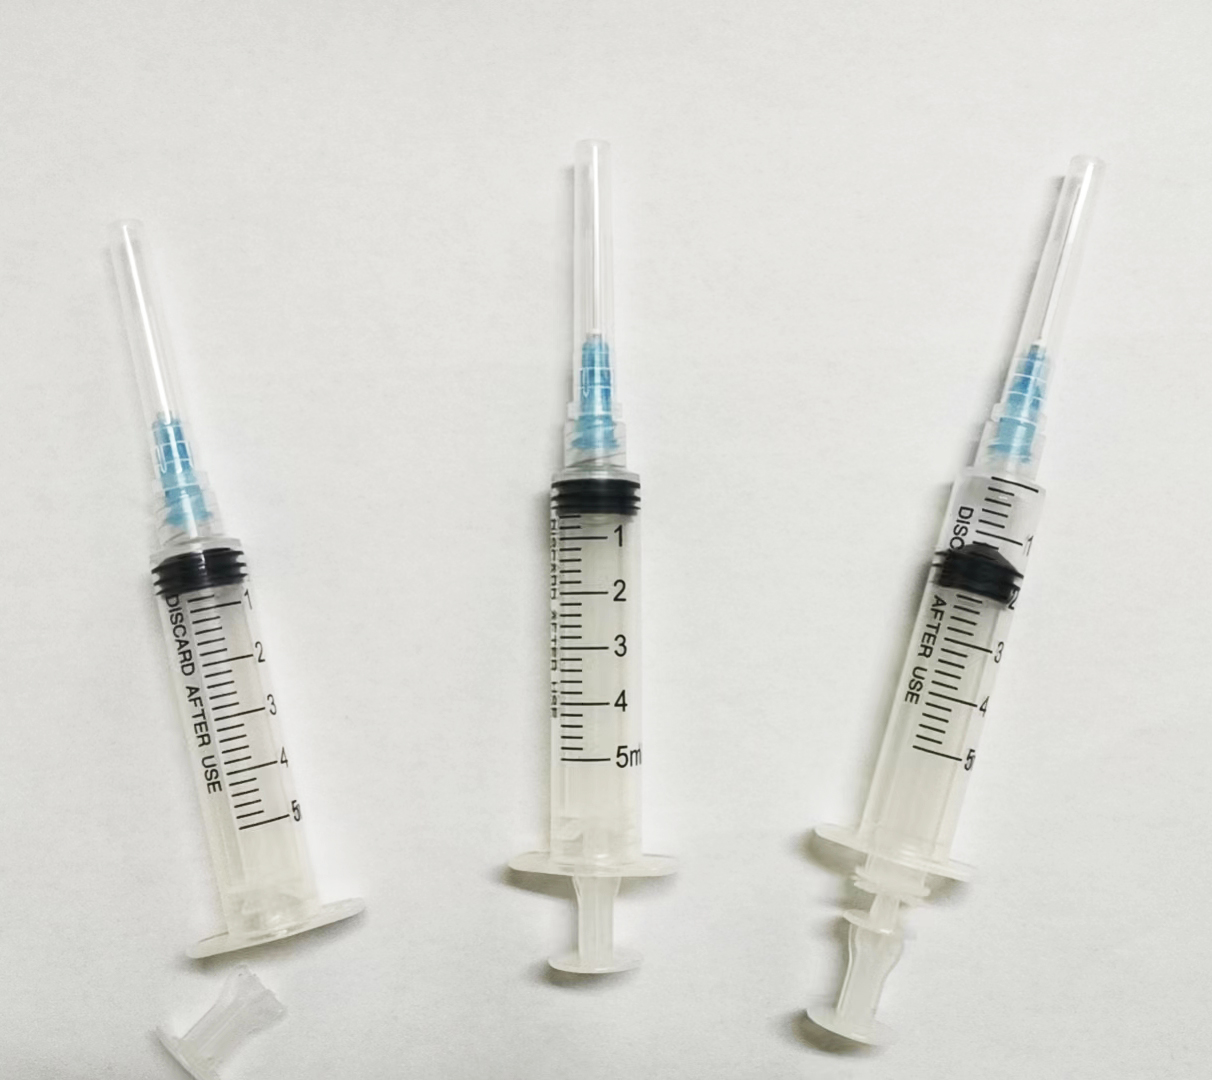 Use auto-destruct Syringe